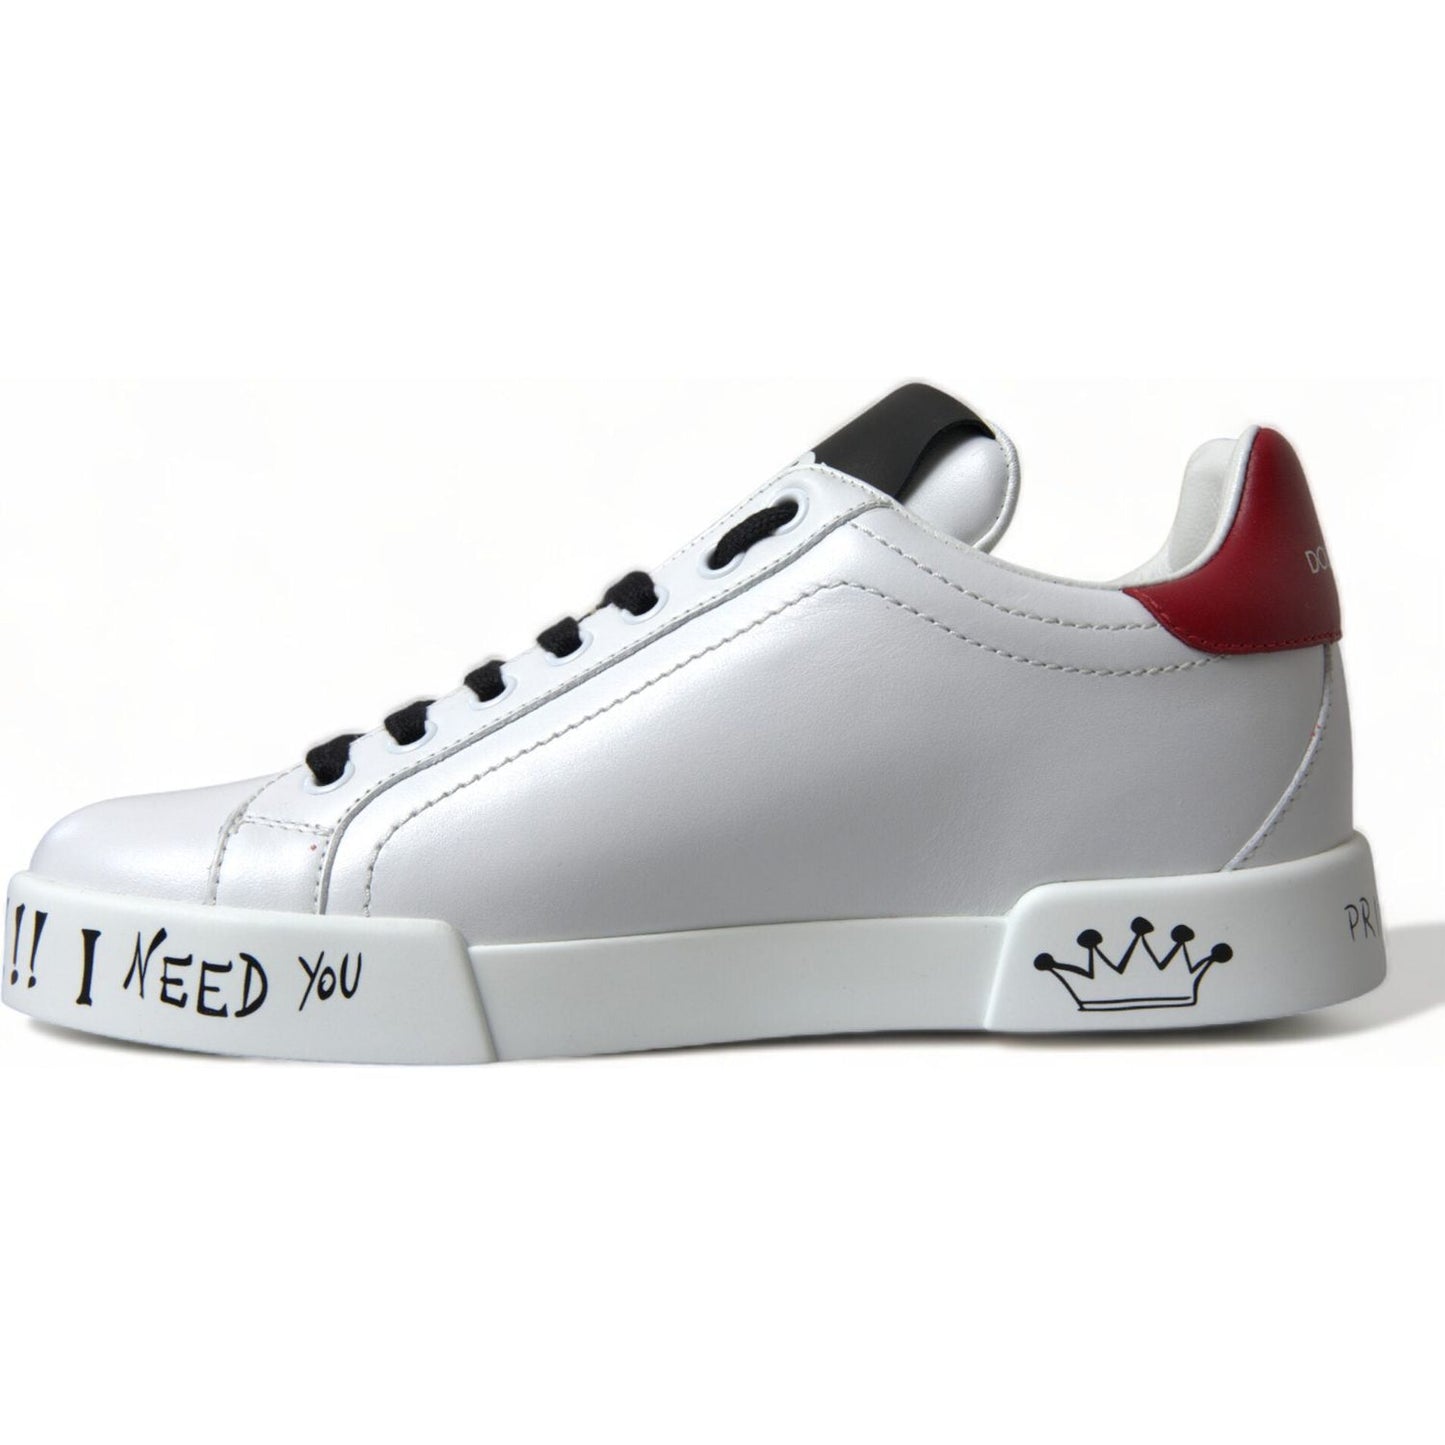 Dolce & Gabbana Chic White Portofino Leather Sneakers white-love-patch-portofino-classic-sneakers-shoes 465A3320-BG-scaled-dc68d45e-dd3.jpg